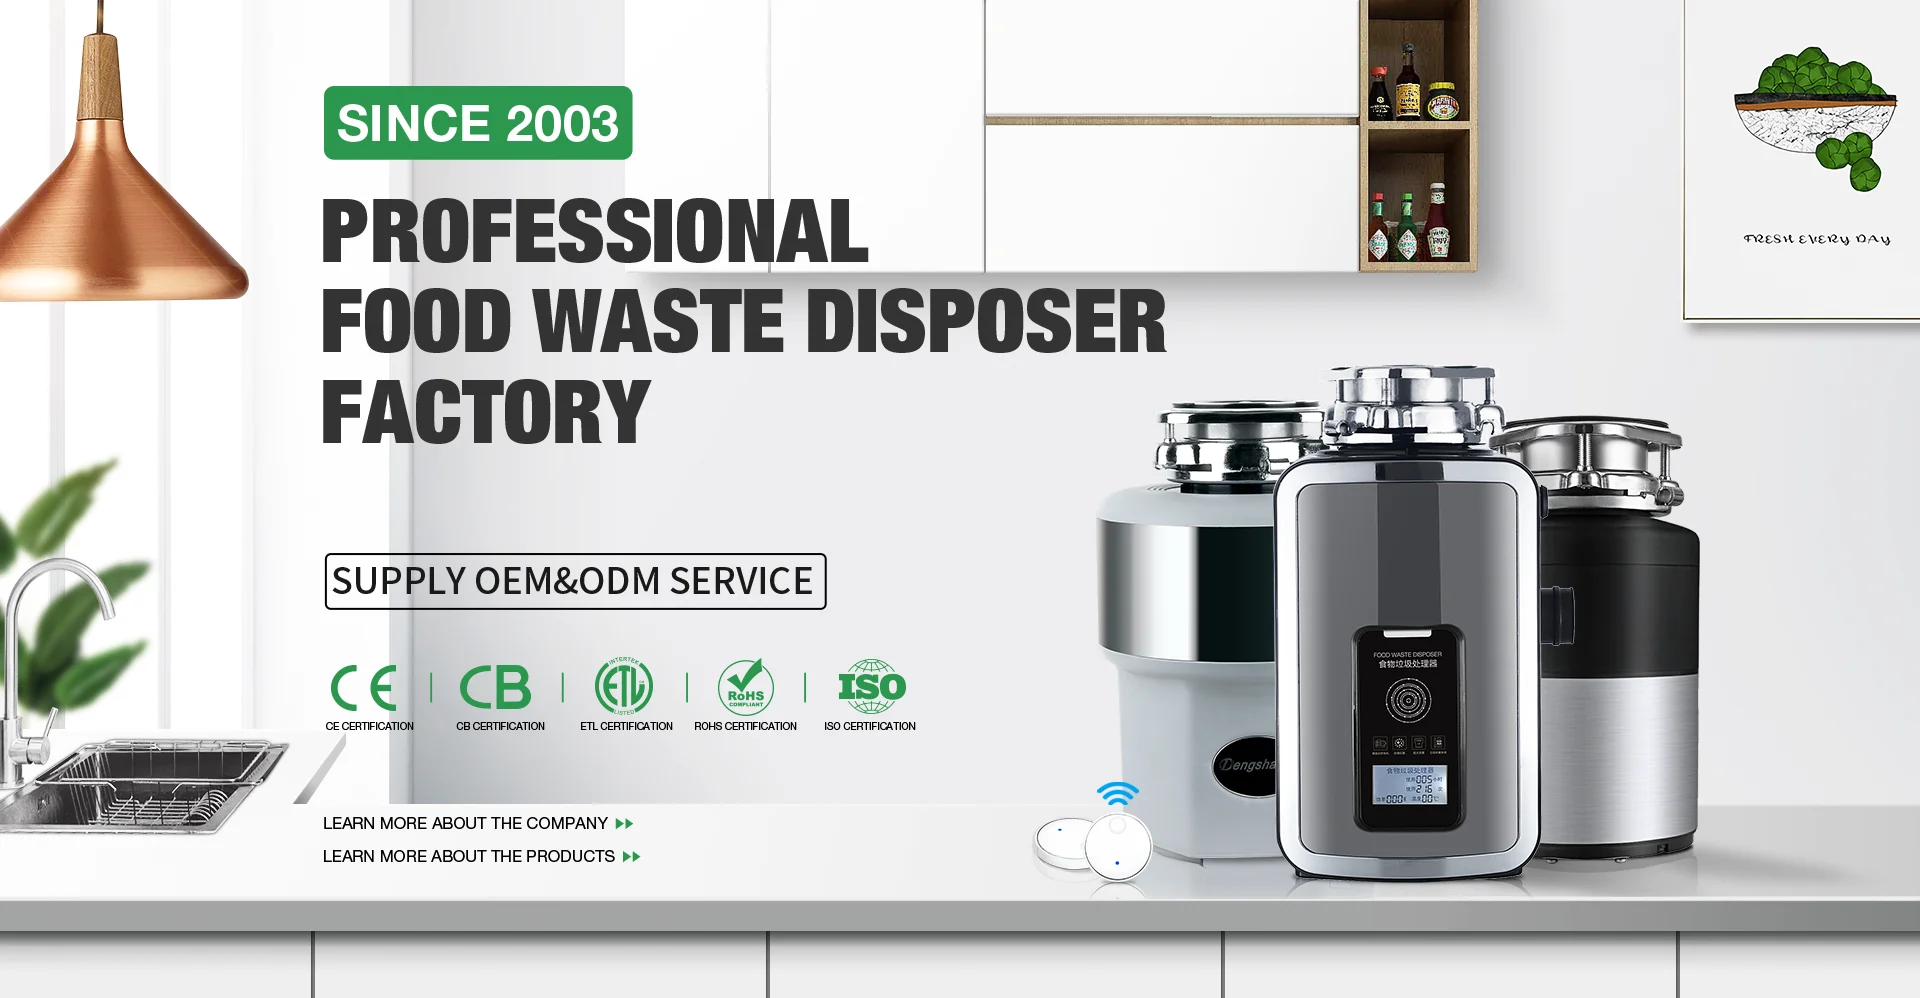 BLDC Motor For Food Waste Disposer